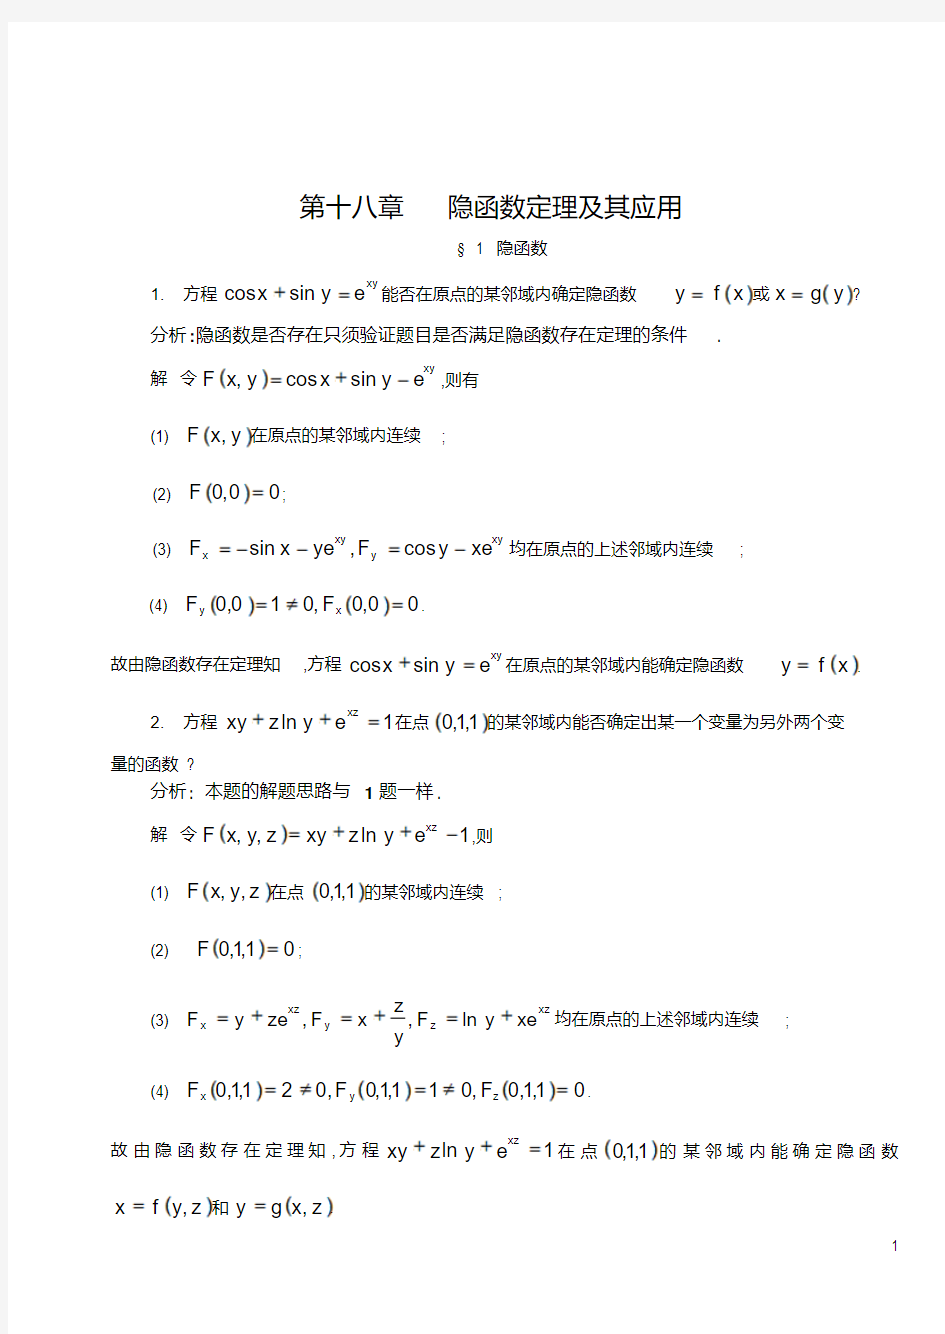 华东师范大学数学分析第18章习题解答